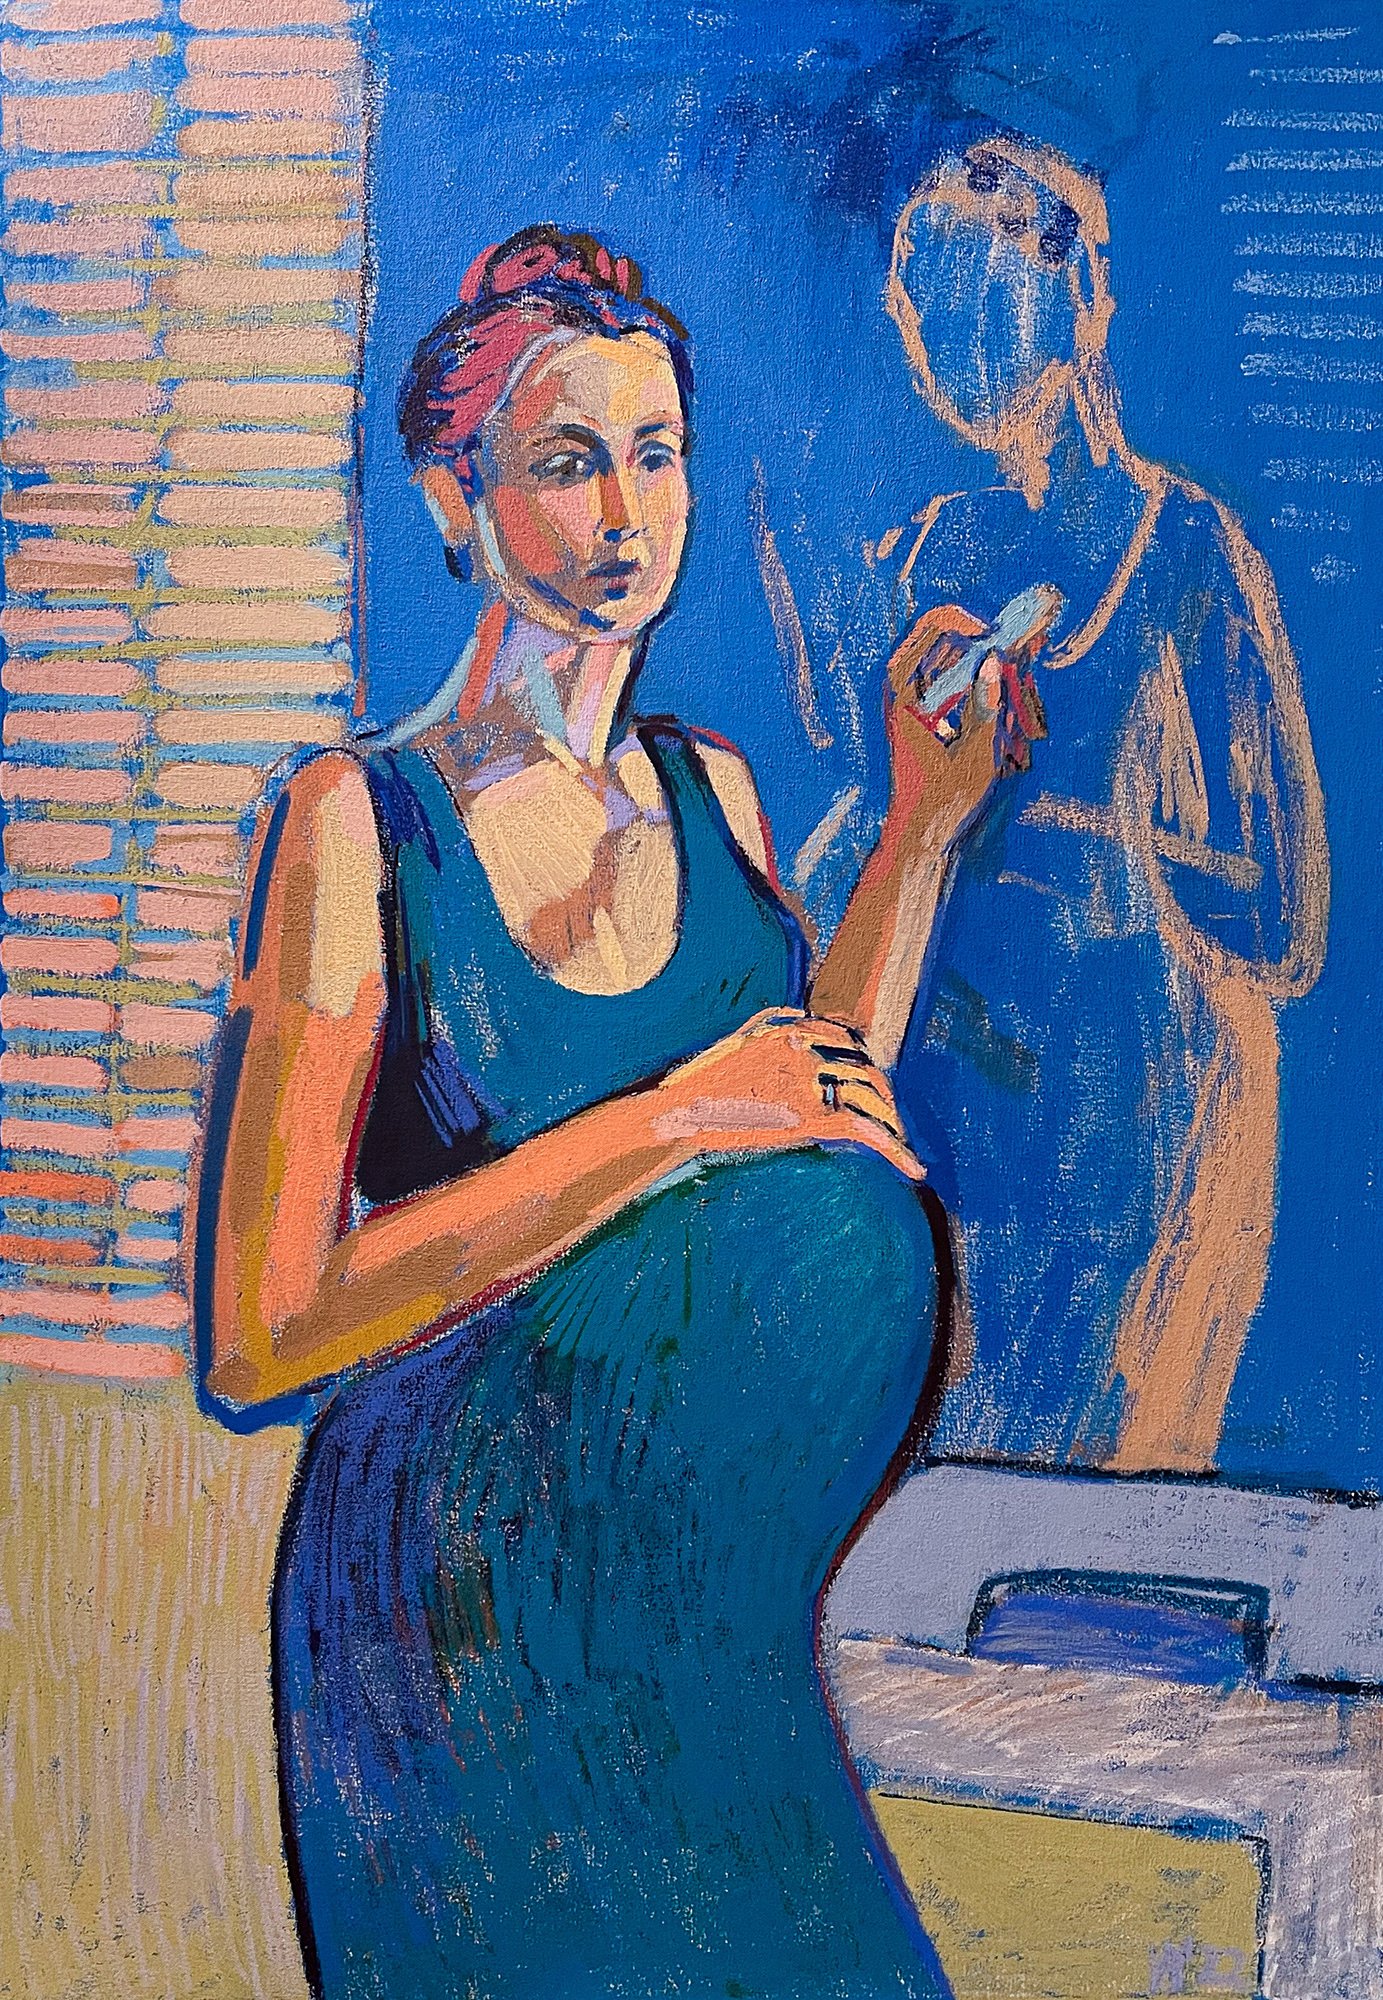 Self-portrait in The Studio, 2022 - tempera sticks on canvas, 28x40in